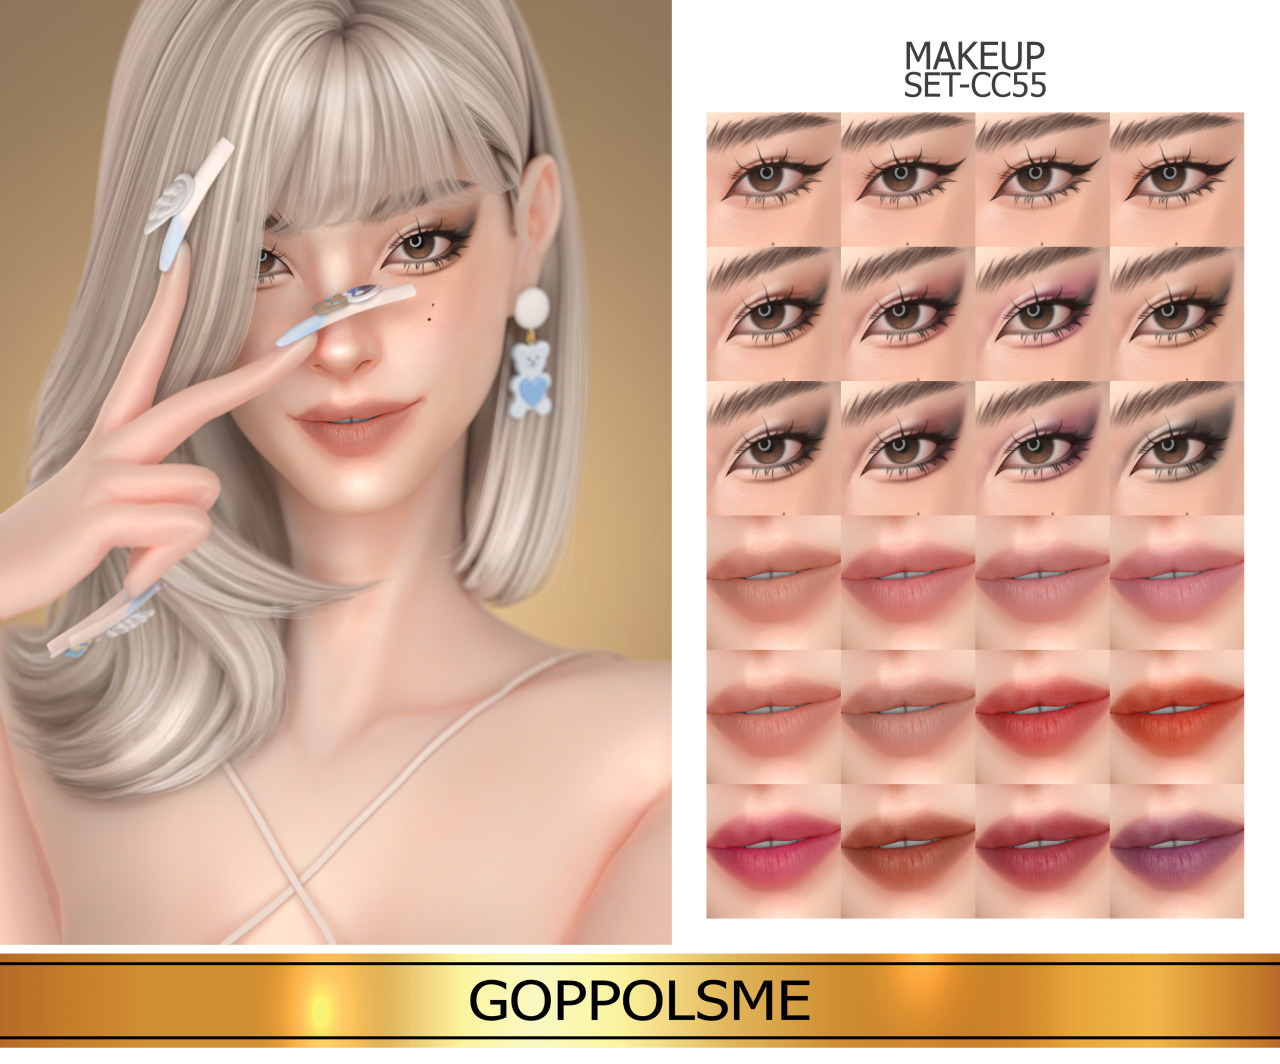 Goppols Me Gpme Gold Makeup Set Cc55 Download At Goppolsme